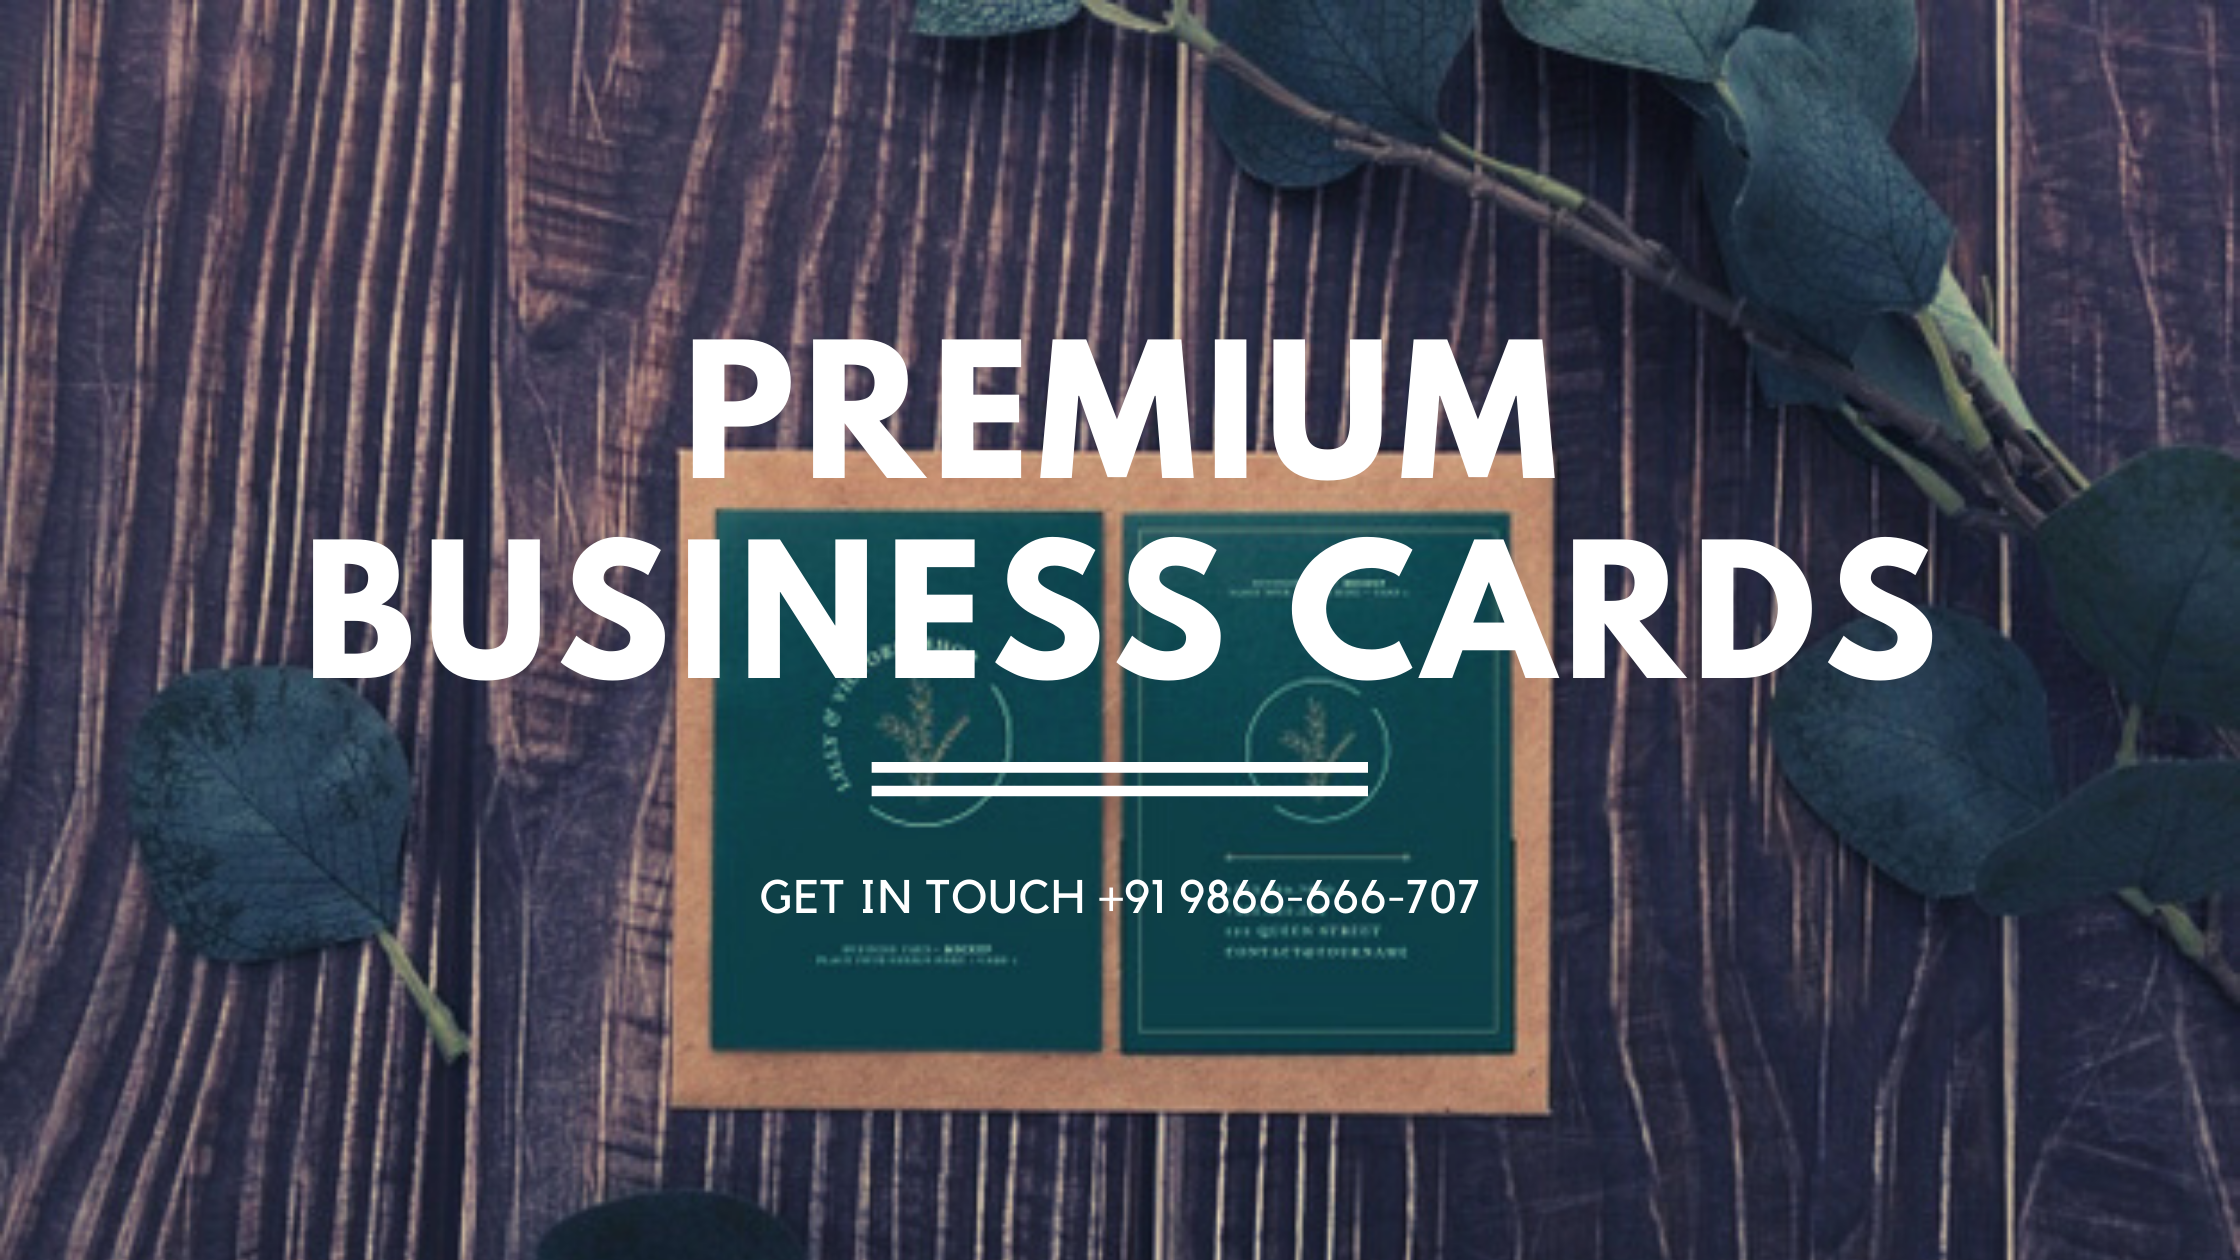 Premium Business cards